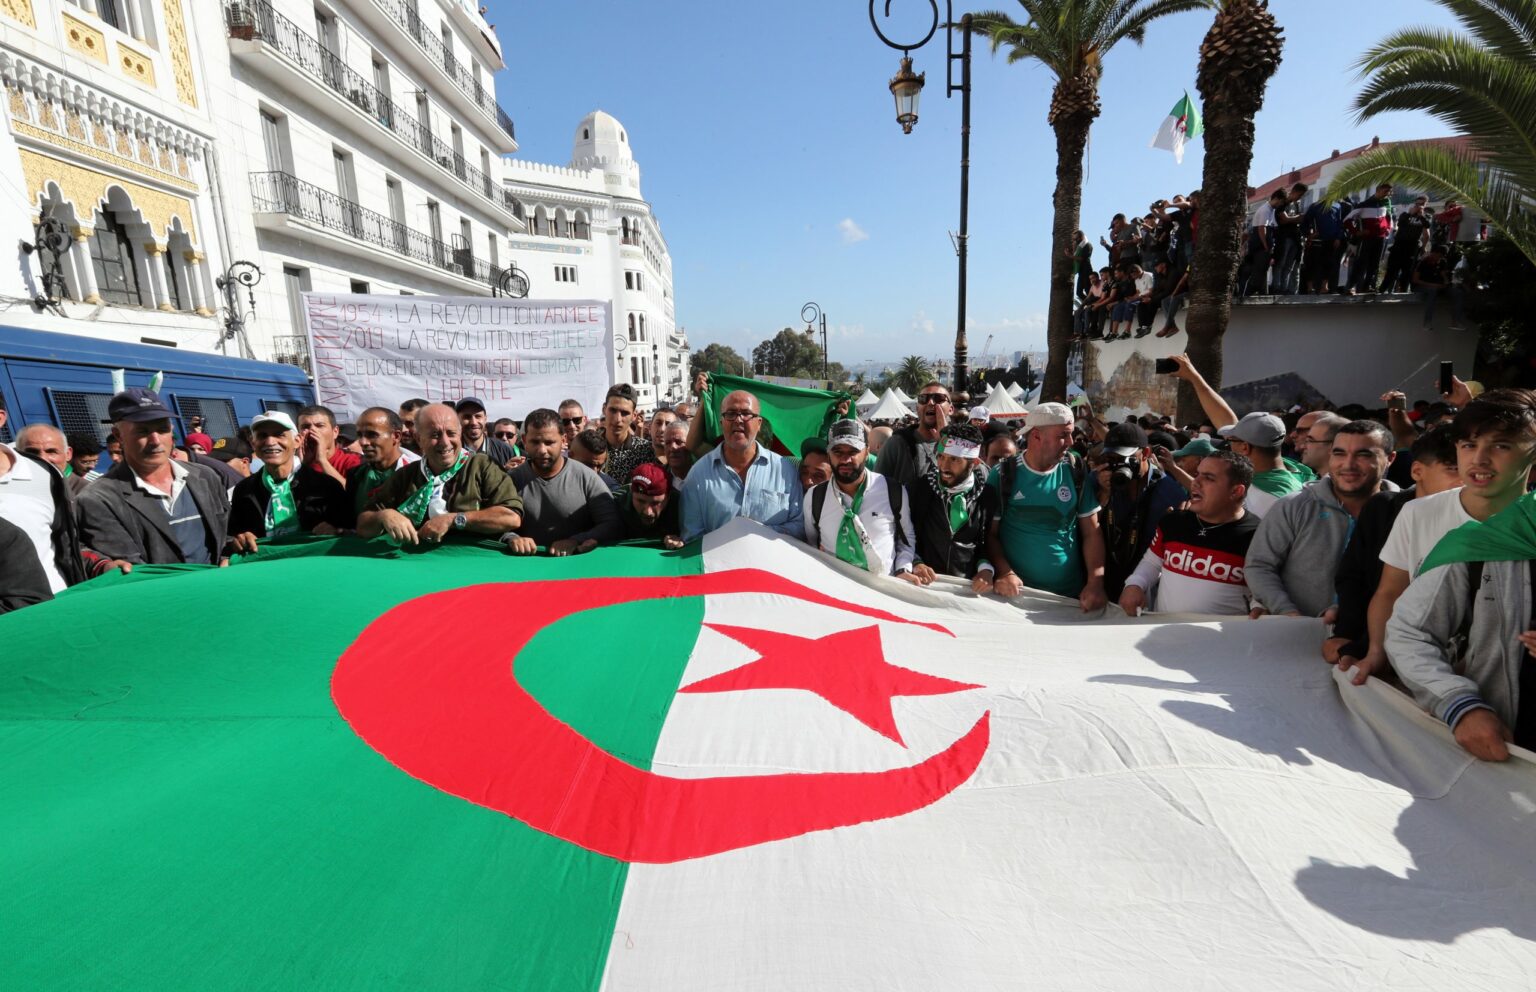 "اليد الممدودة": نهج جزائري جديد لمعالجة التحديات الداخلية